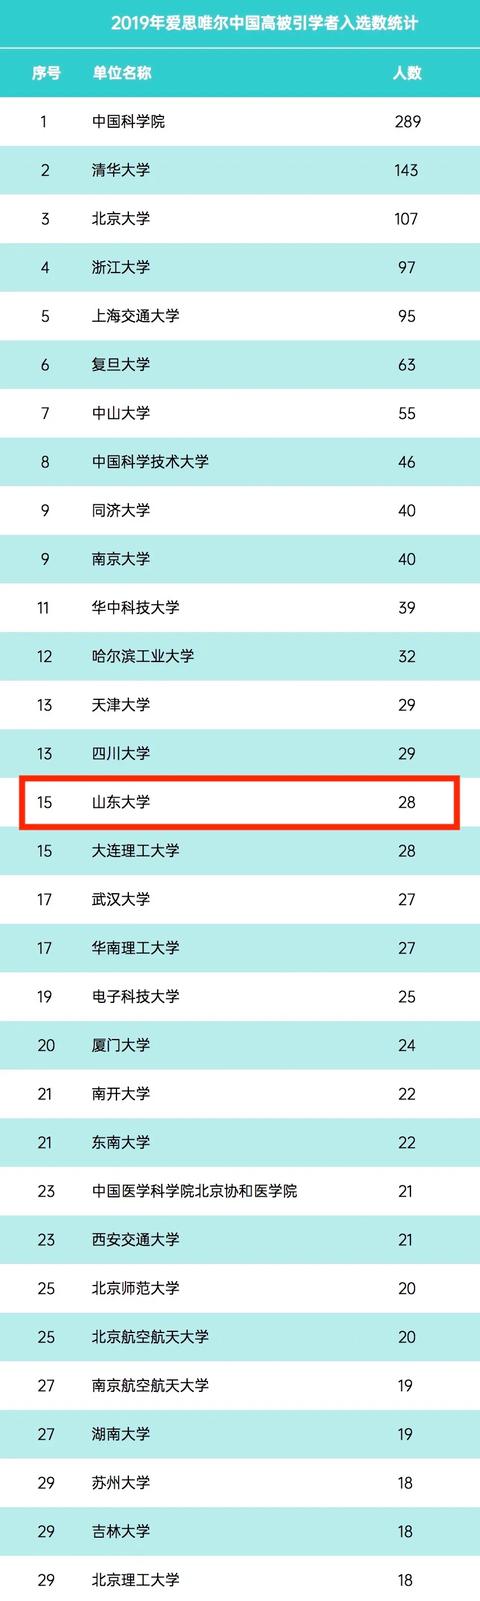 山大28位學者入選2019年中國高被引學者榜單